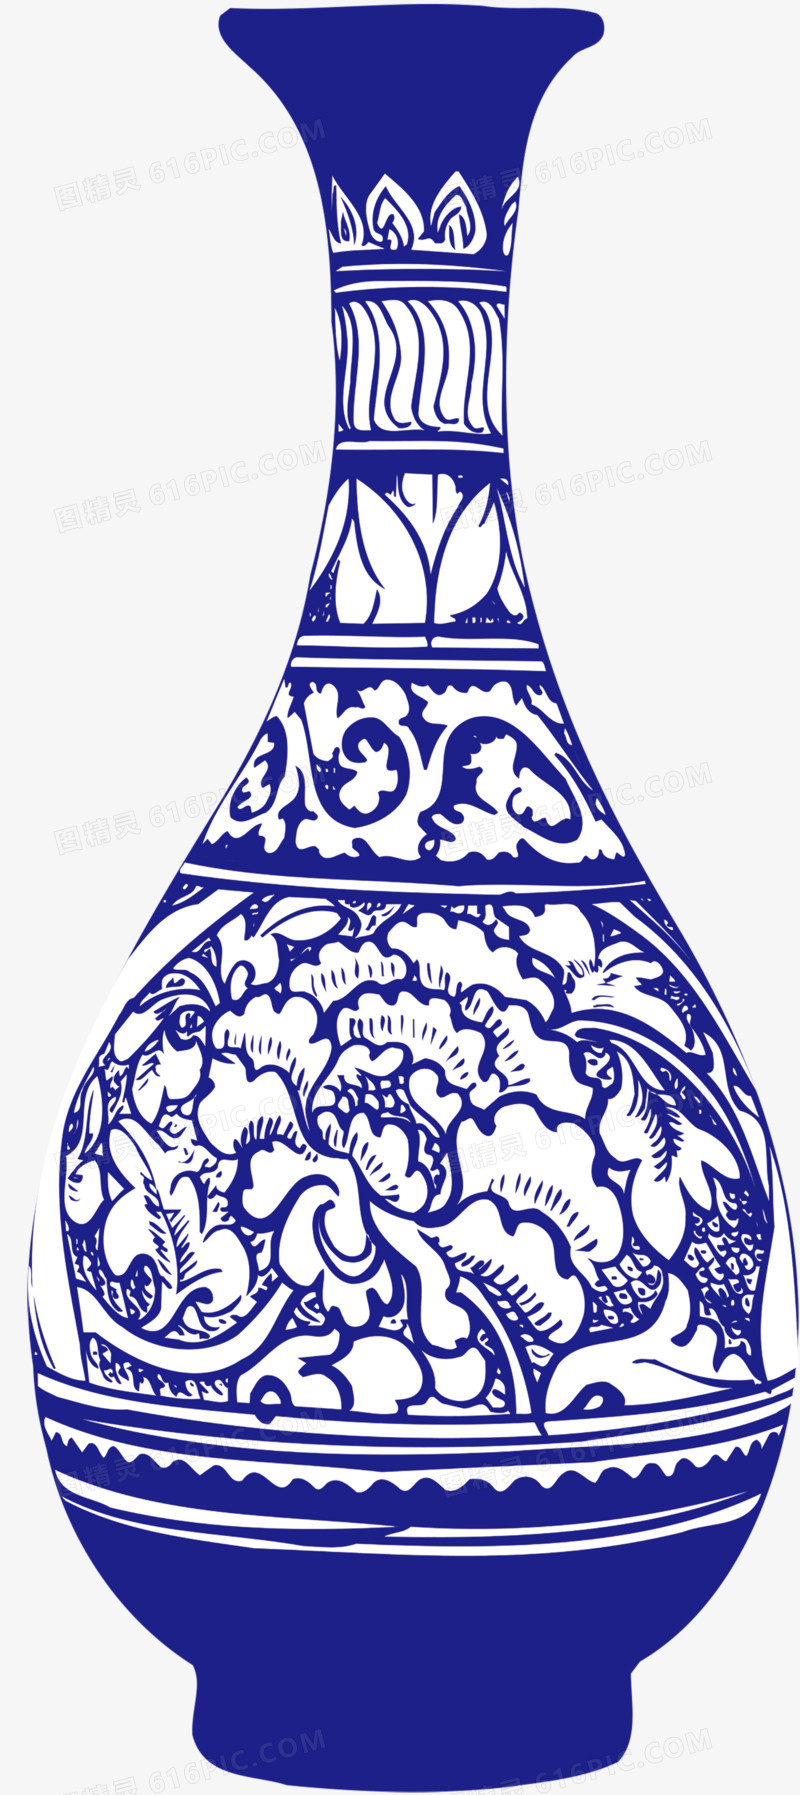 关键词:陶瓷瓶罐子龙纹图精灵为您提供古典青花瓷器免费下载,本设计